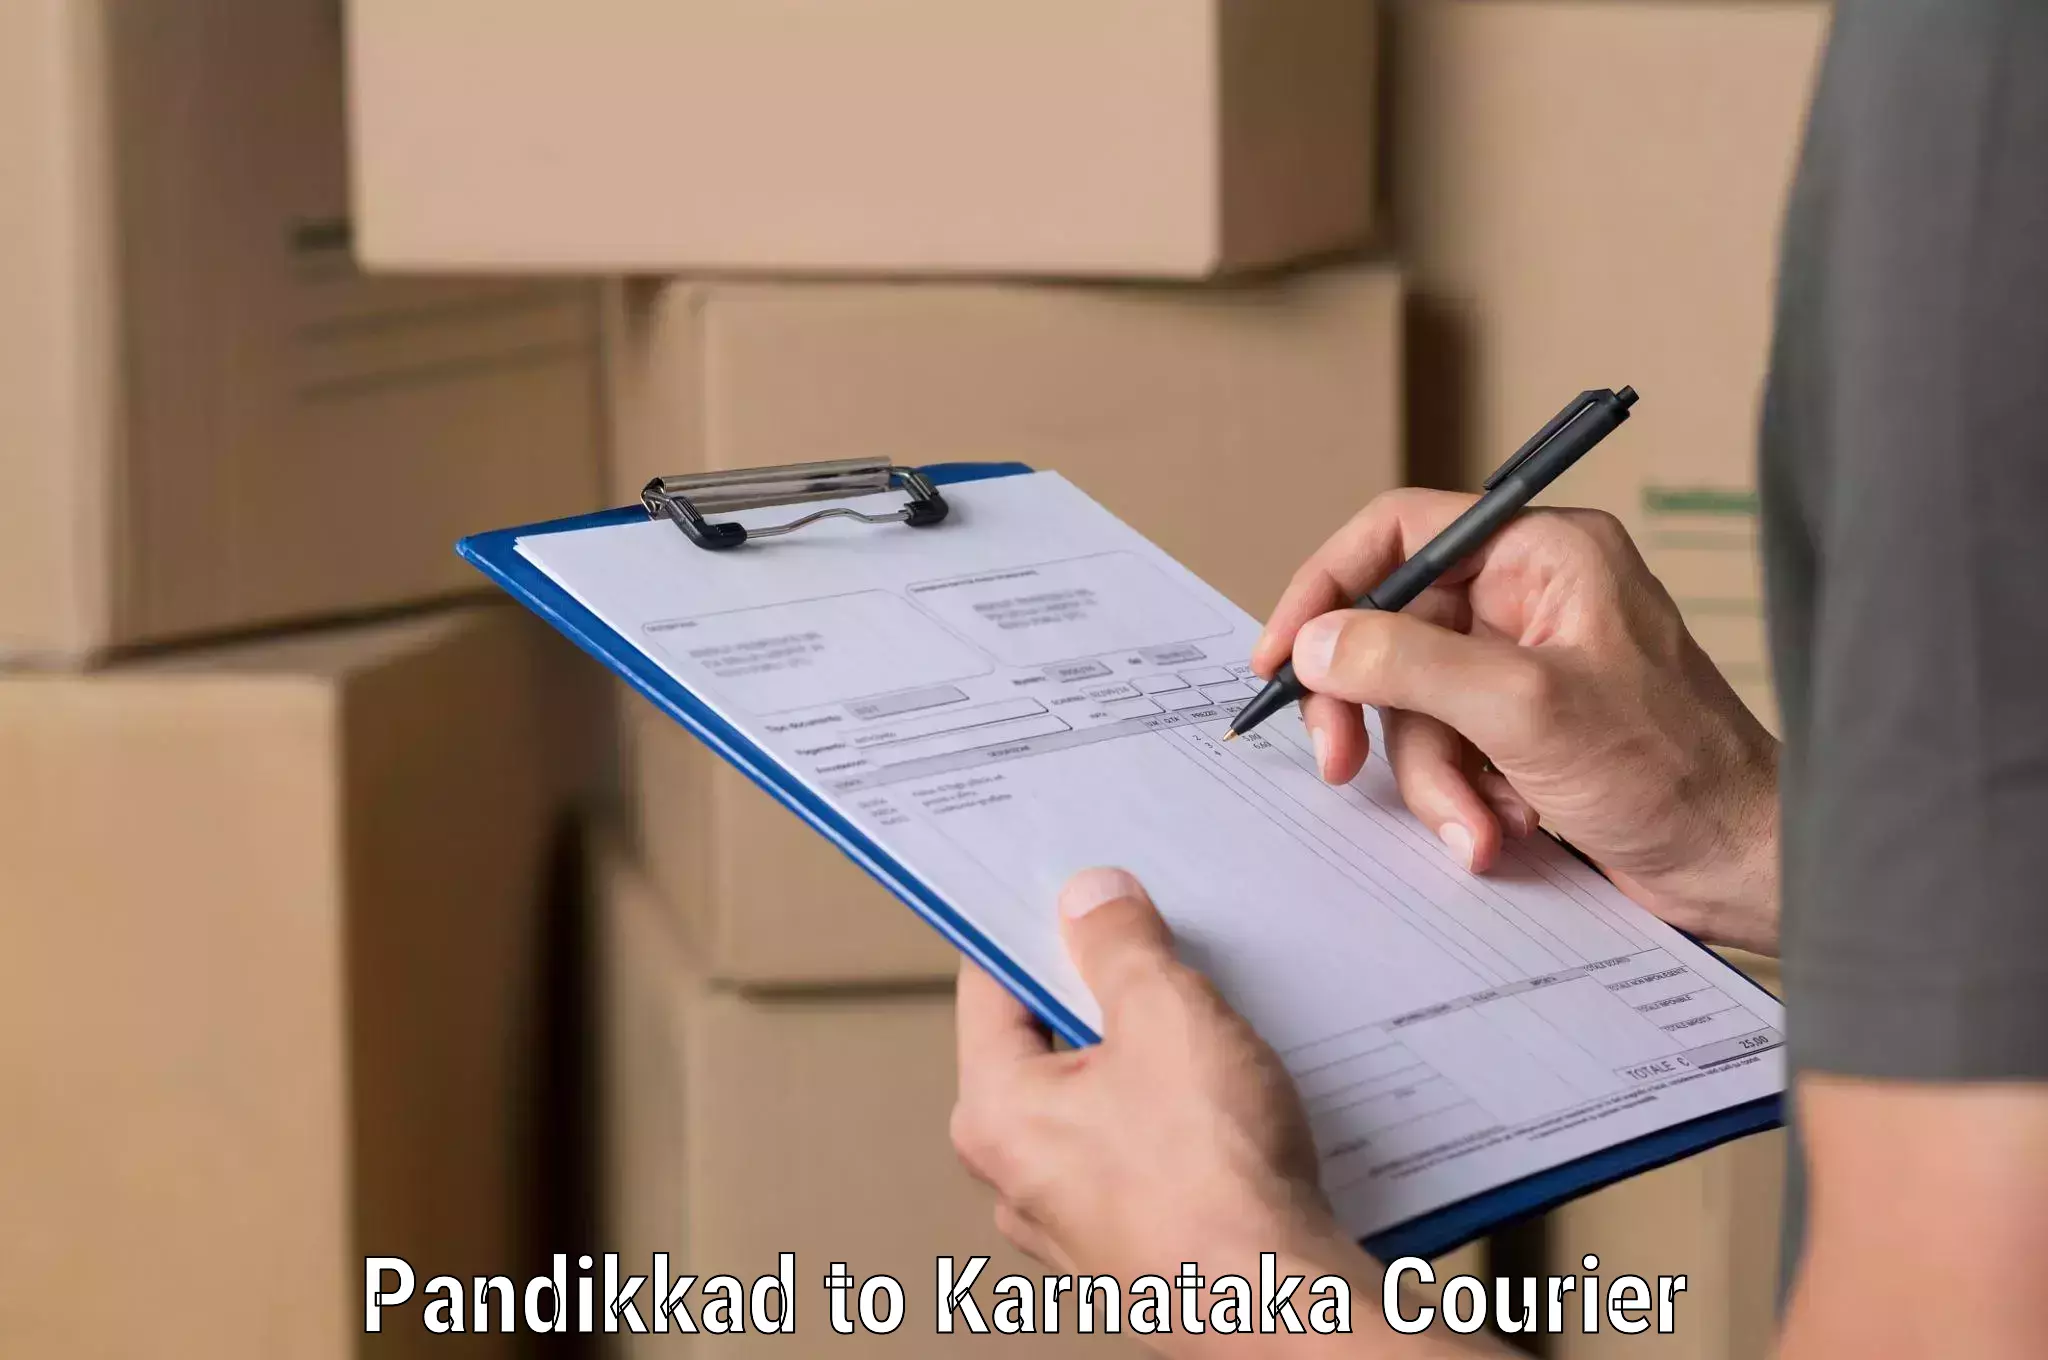 Express logistics service Pandikkad to Saundatti Yallamma